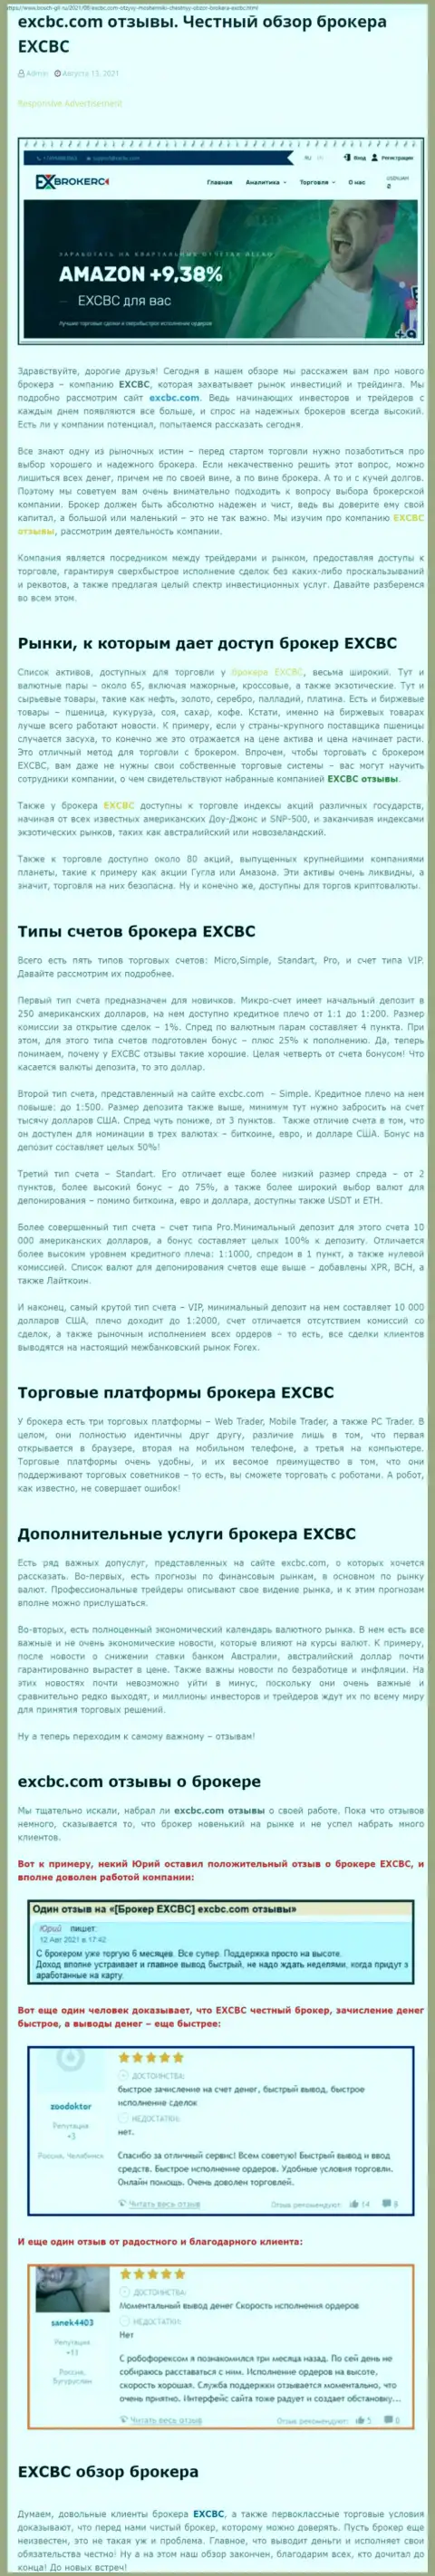 Достоверный обзор форекс брокерской компании EXCBC на онлайн-ресурсе Бош Гил Ру